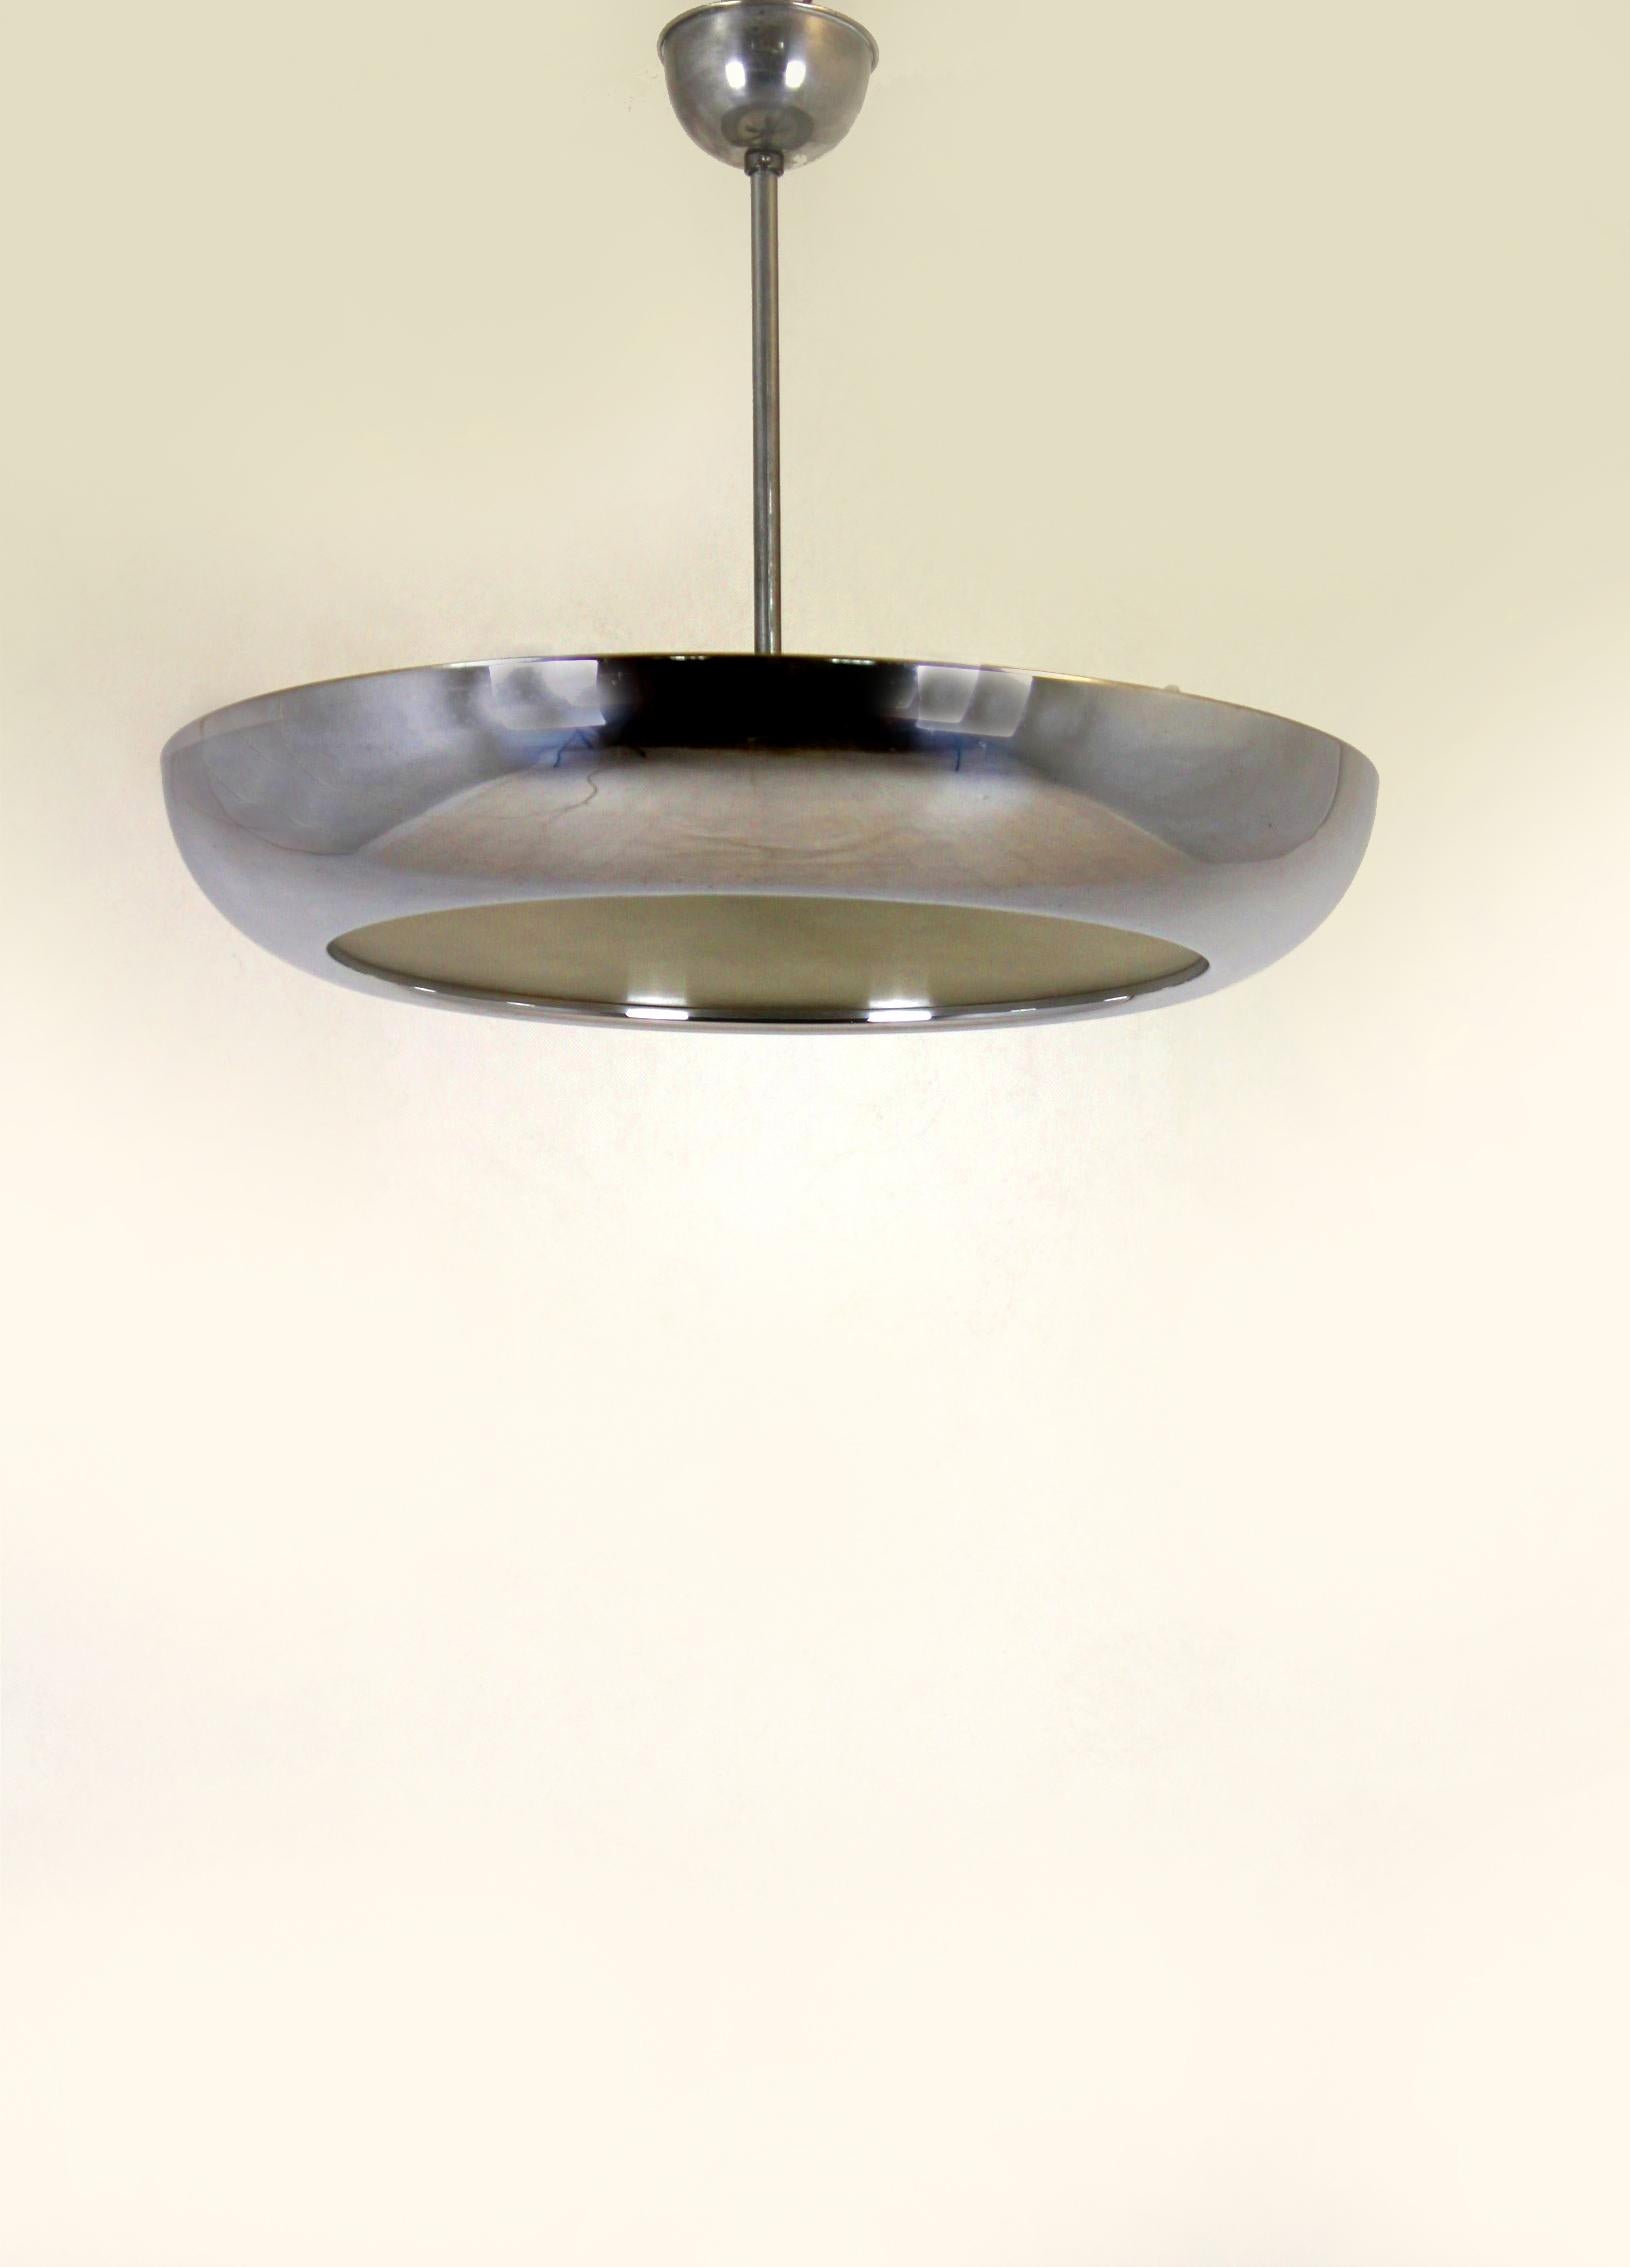 - Lampe pendante Bauhaus UFO conçue par Josef Hurka pour Napako
- Produit dans les années 1930
- En métal chromé et verre, avec quatre douilles en bakélite
- Dans un état vintage original.
   